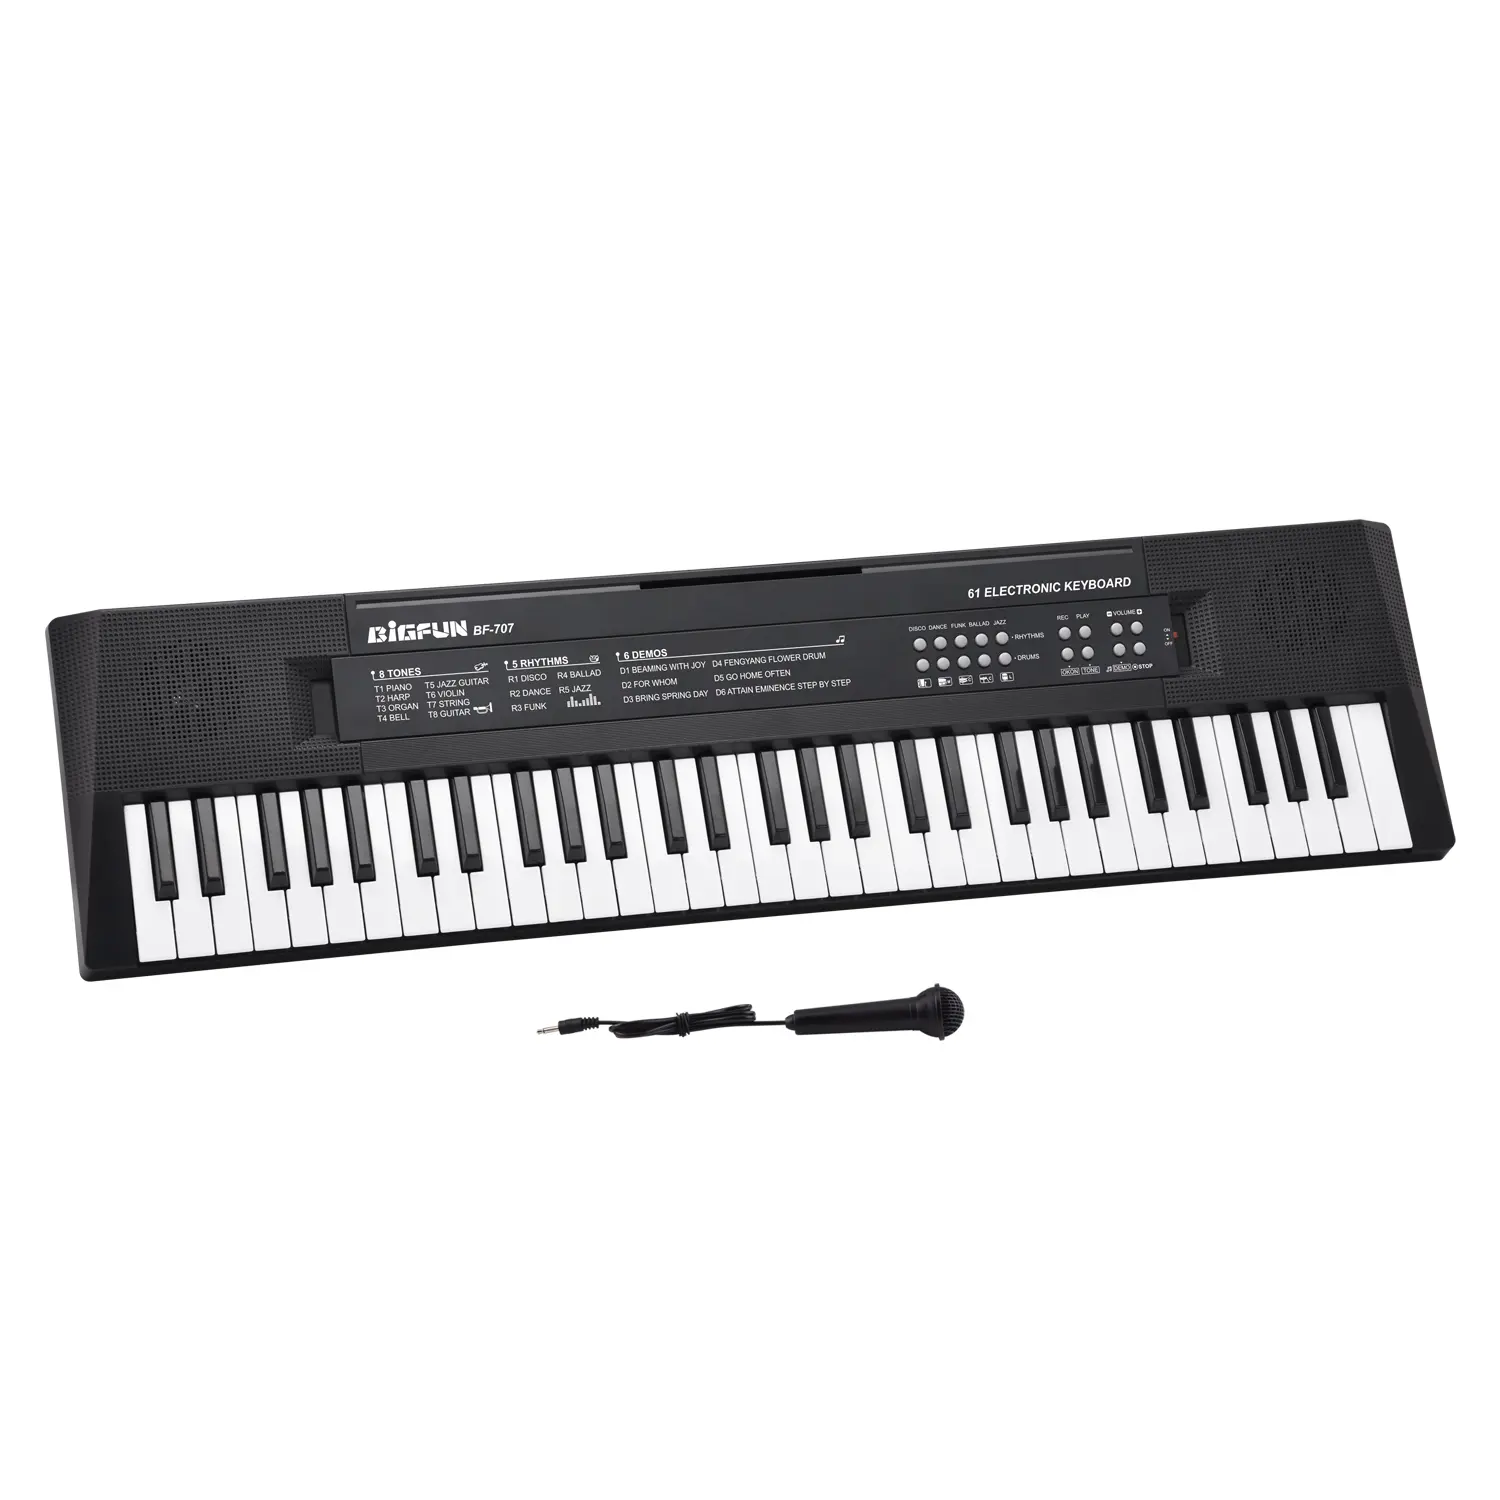 BF-707 музыкальная клавиатура игрушка пианино 61 клавиша электронная клавиатура игрушка электронный орган подсветка клавиатура для детей